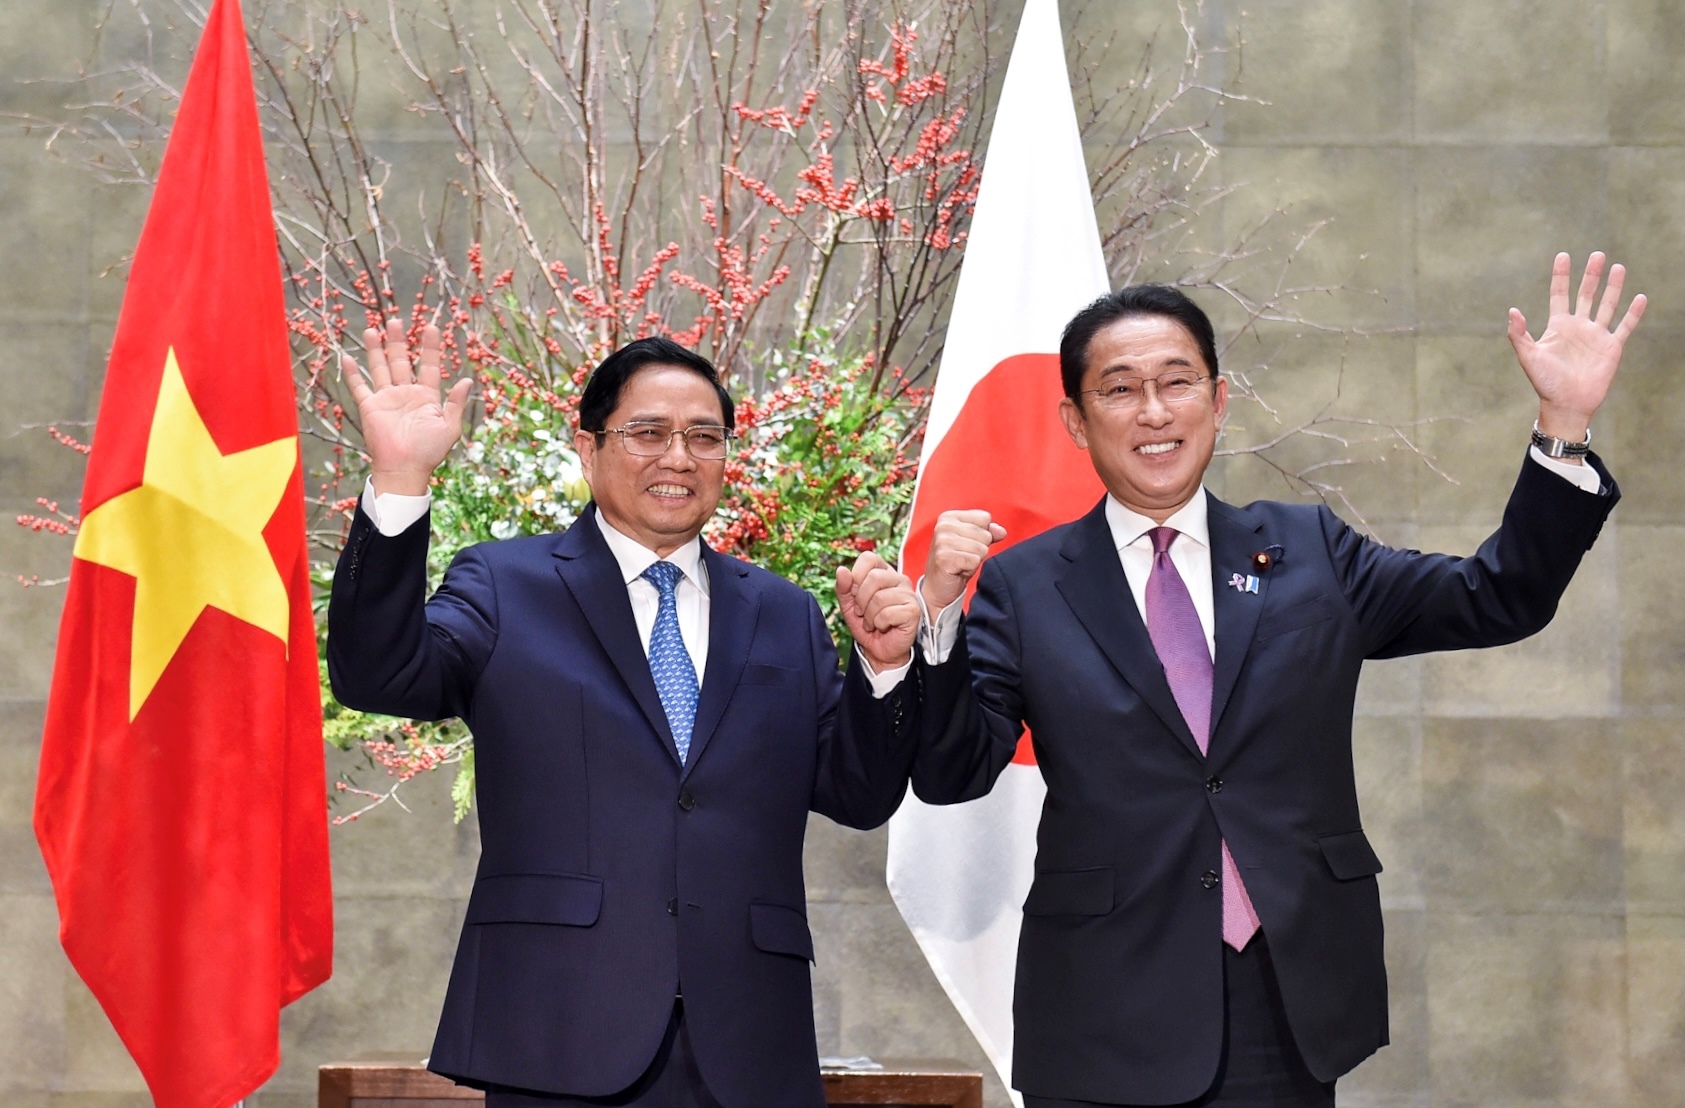 Thủ tướng Nhật Bản và chuyến thăm tới đất nước ‘đặc biệt’ Việt Nam - Ảnh 1.